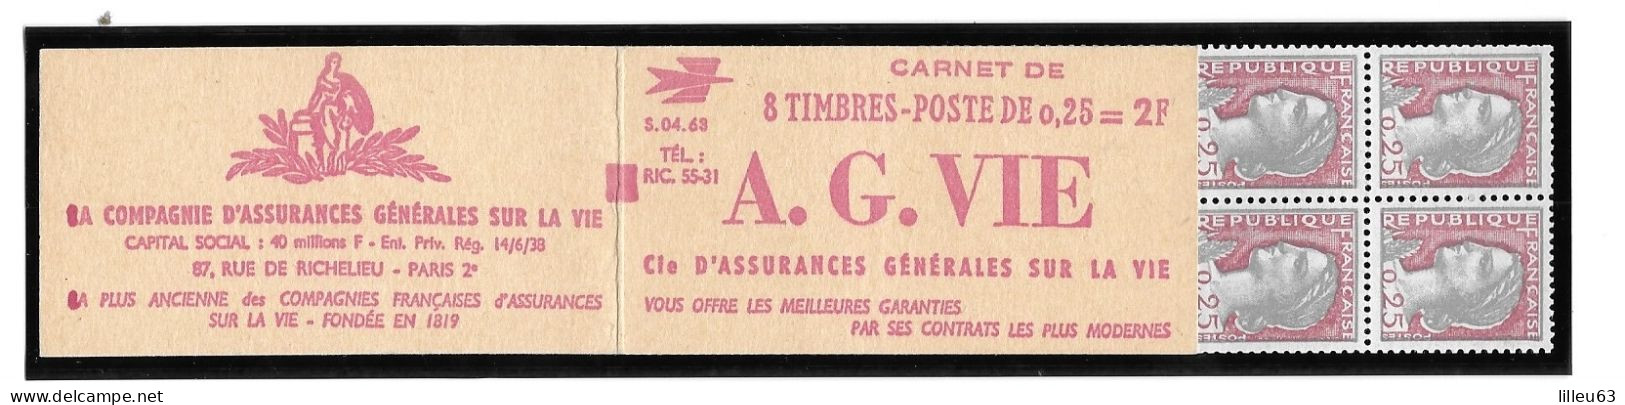 Rare Variete 2 Carnets Marianne Decaris  1263  Carnet 367 Et 367a  Maury  Série 4.63  6mm Au Lieu De 8mm SUP - Moderne : 1959-...